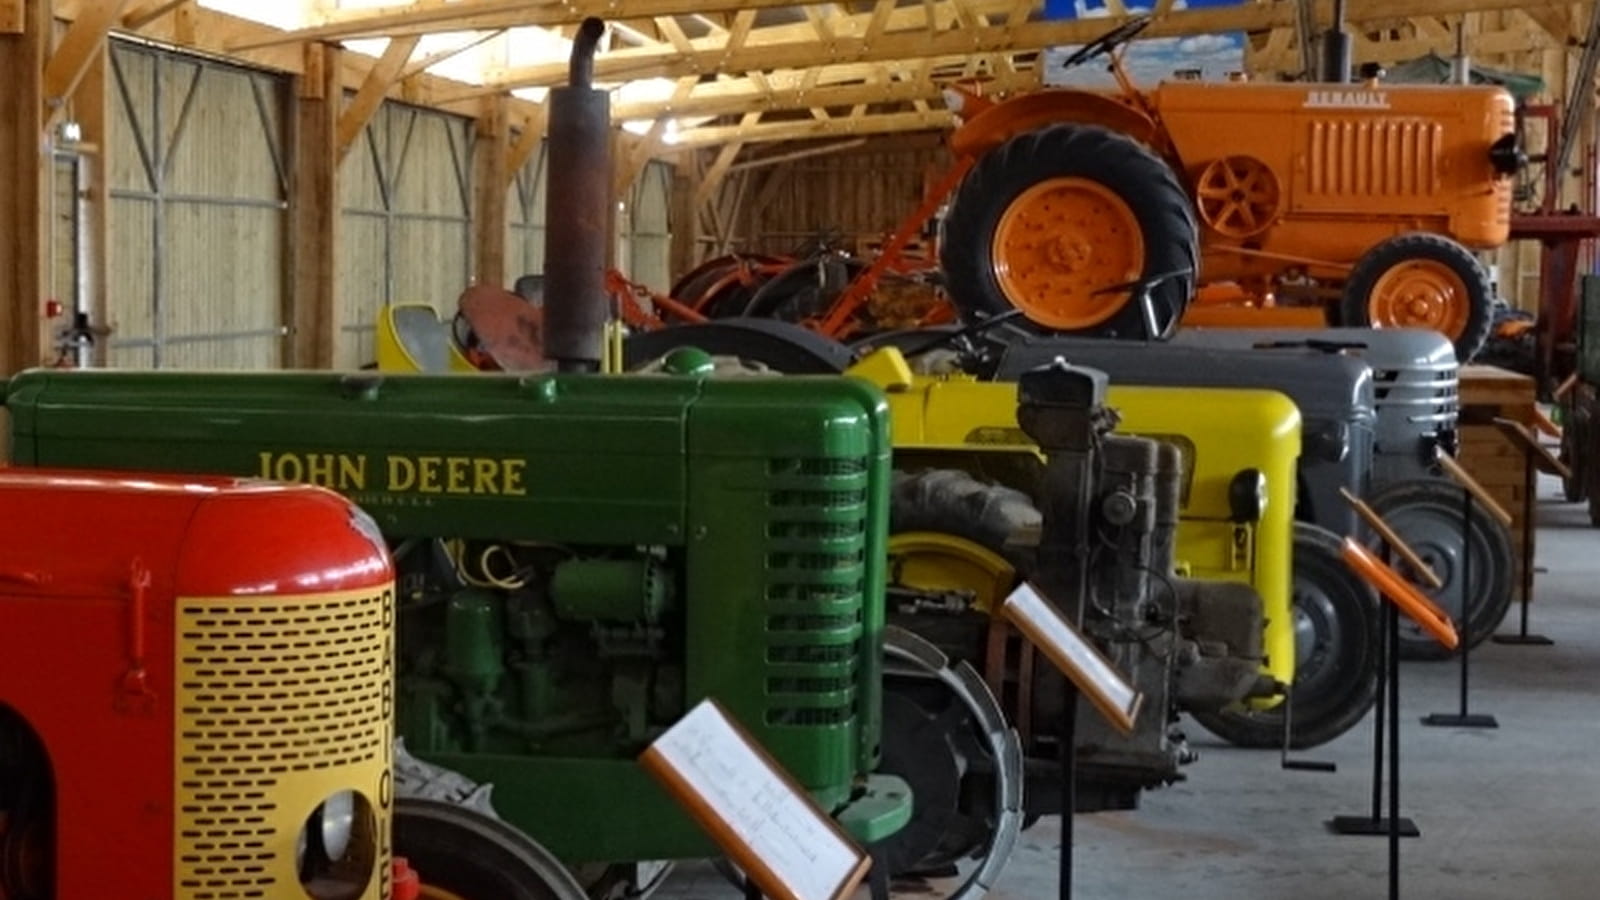 Musée de la Machine Agricole et de la Ruralité (le MUMAR) à Saint-Loup-des-Bois